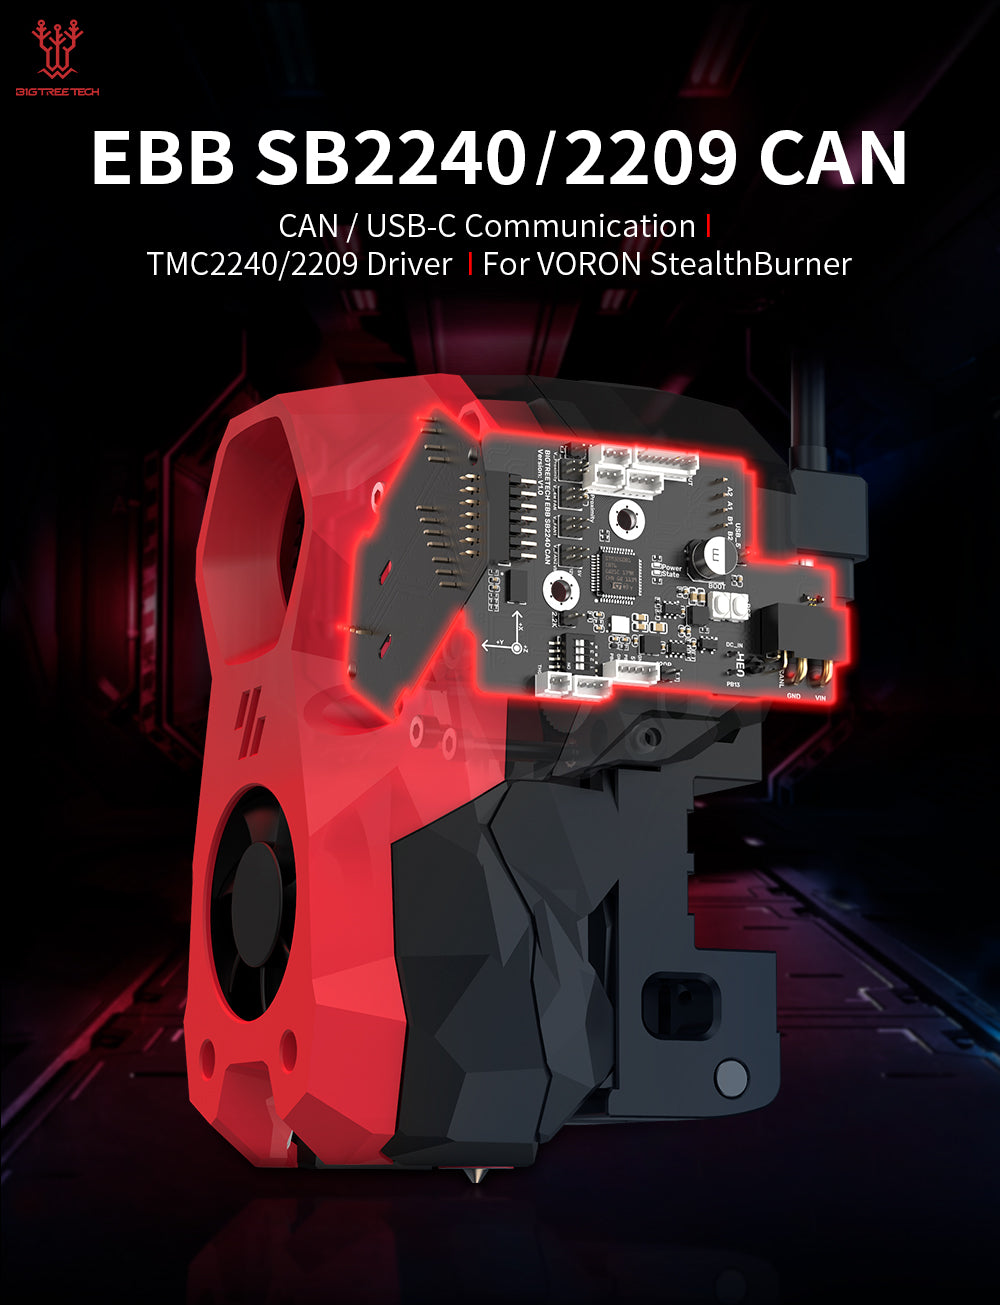 Bigtreetech EBB SB2209 / EBB2240 CAN V1.0 for Voron StealthBurner